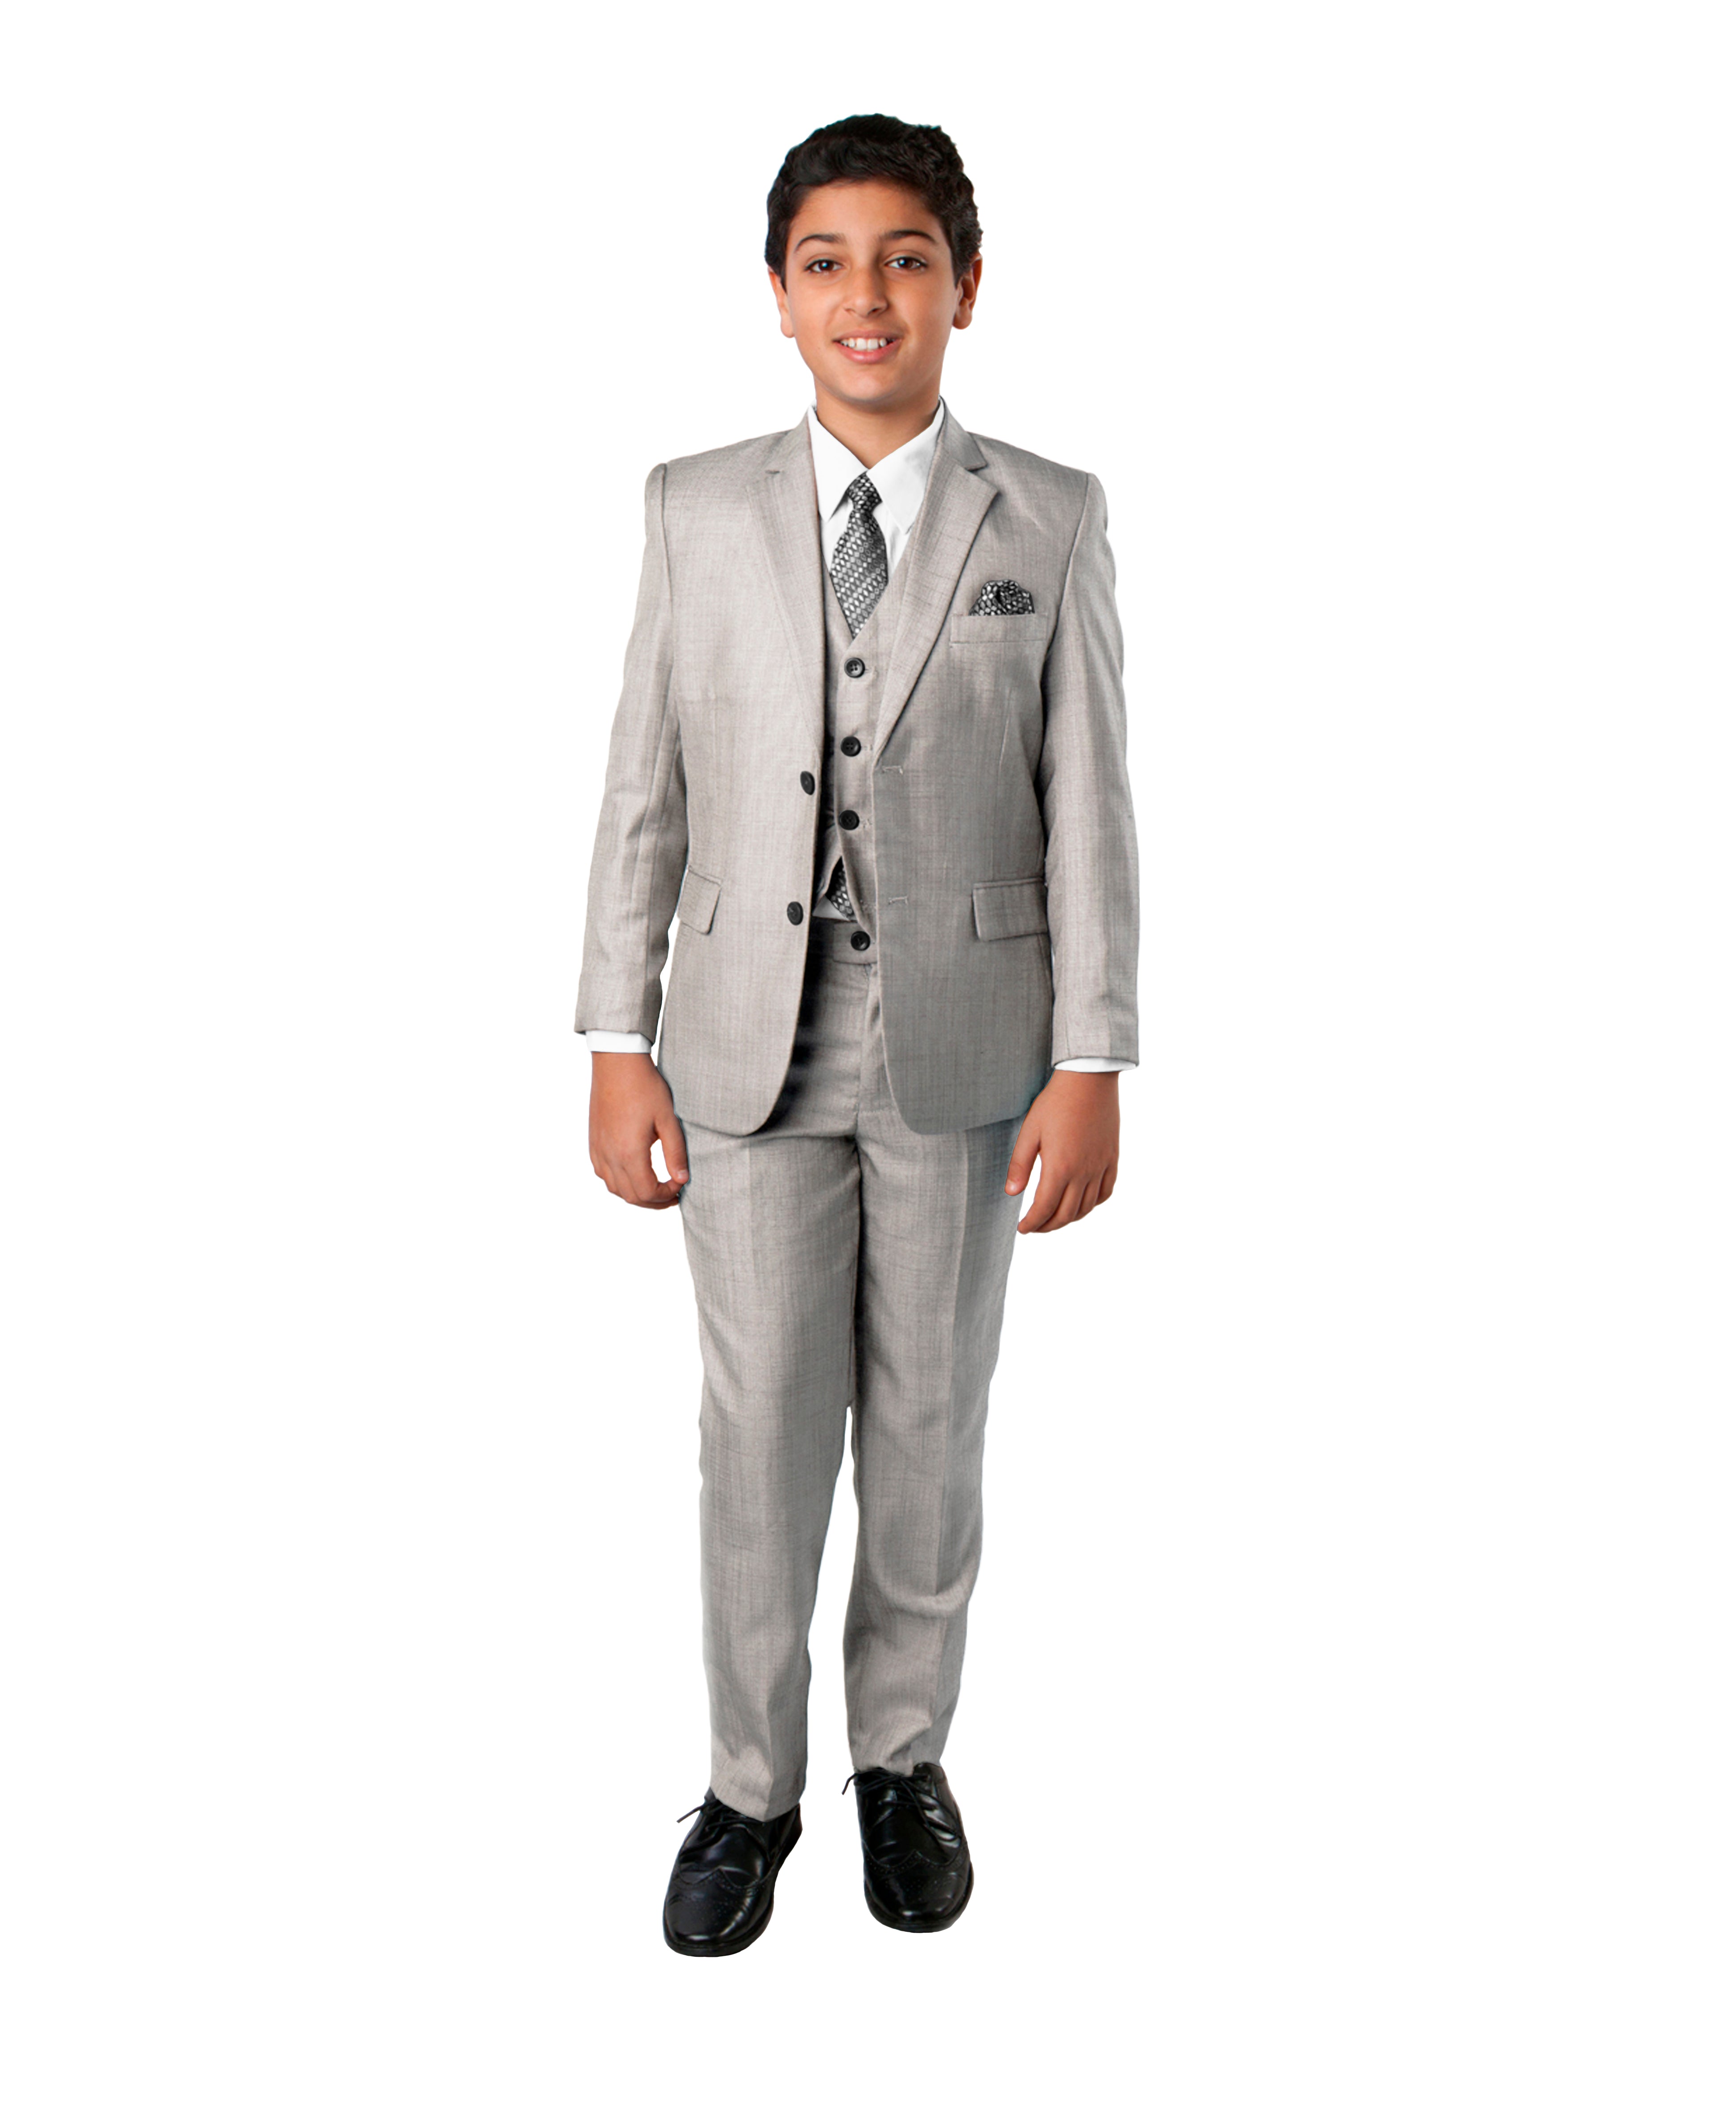 Tazio Modern Fit - Juego de traje para niño (5 piezas), color gris claro